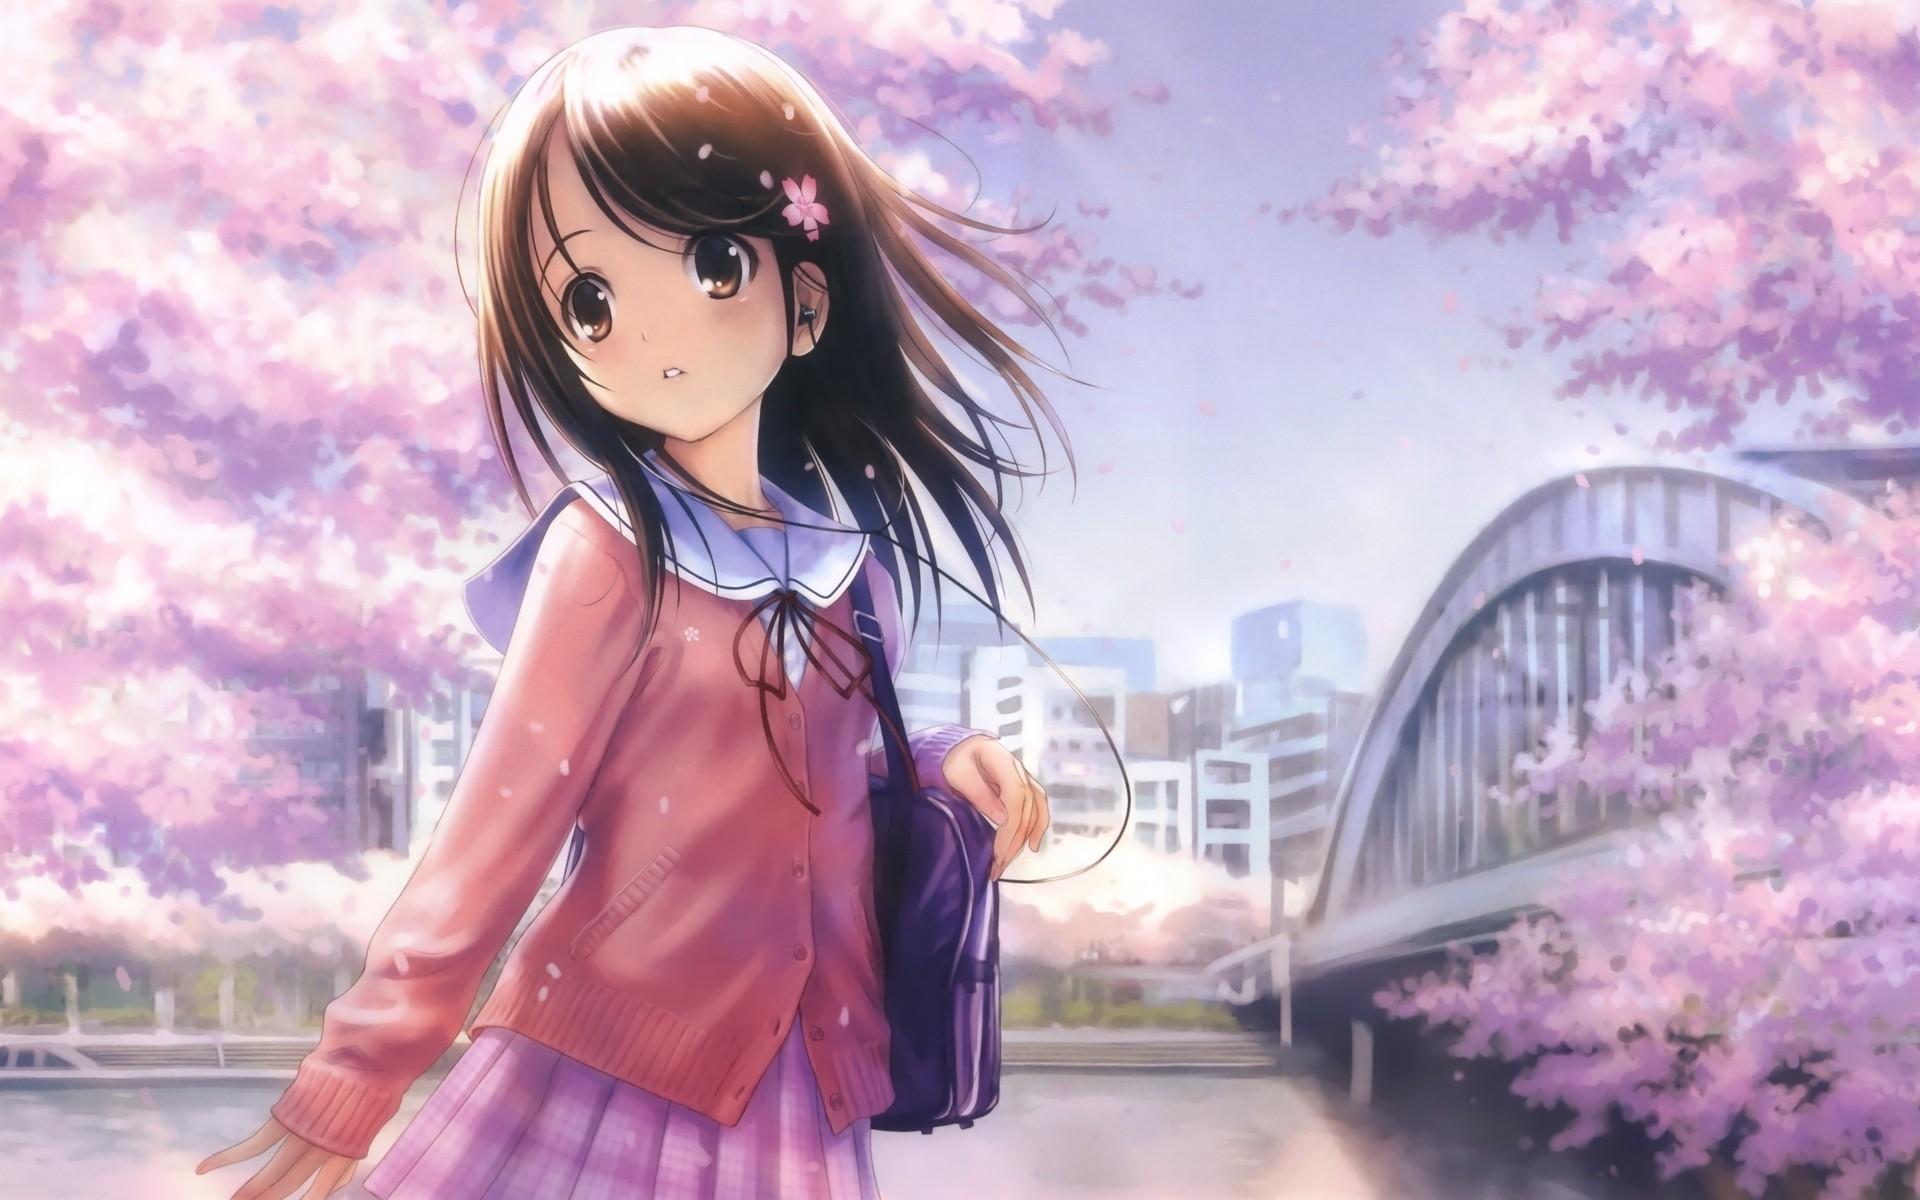 anime Girls, Shirt, City, Bridge, Original Characters